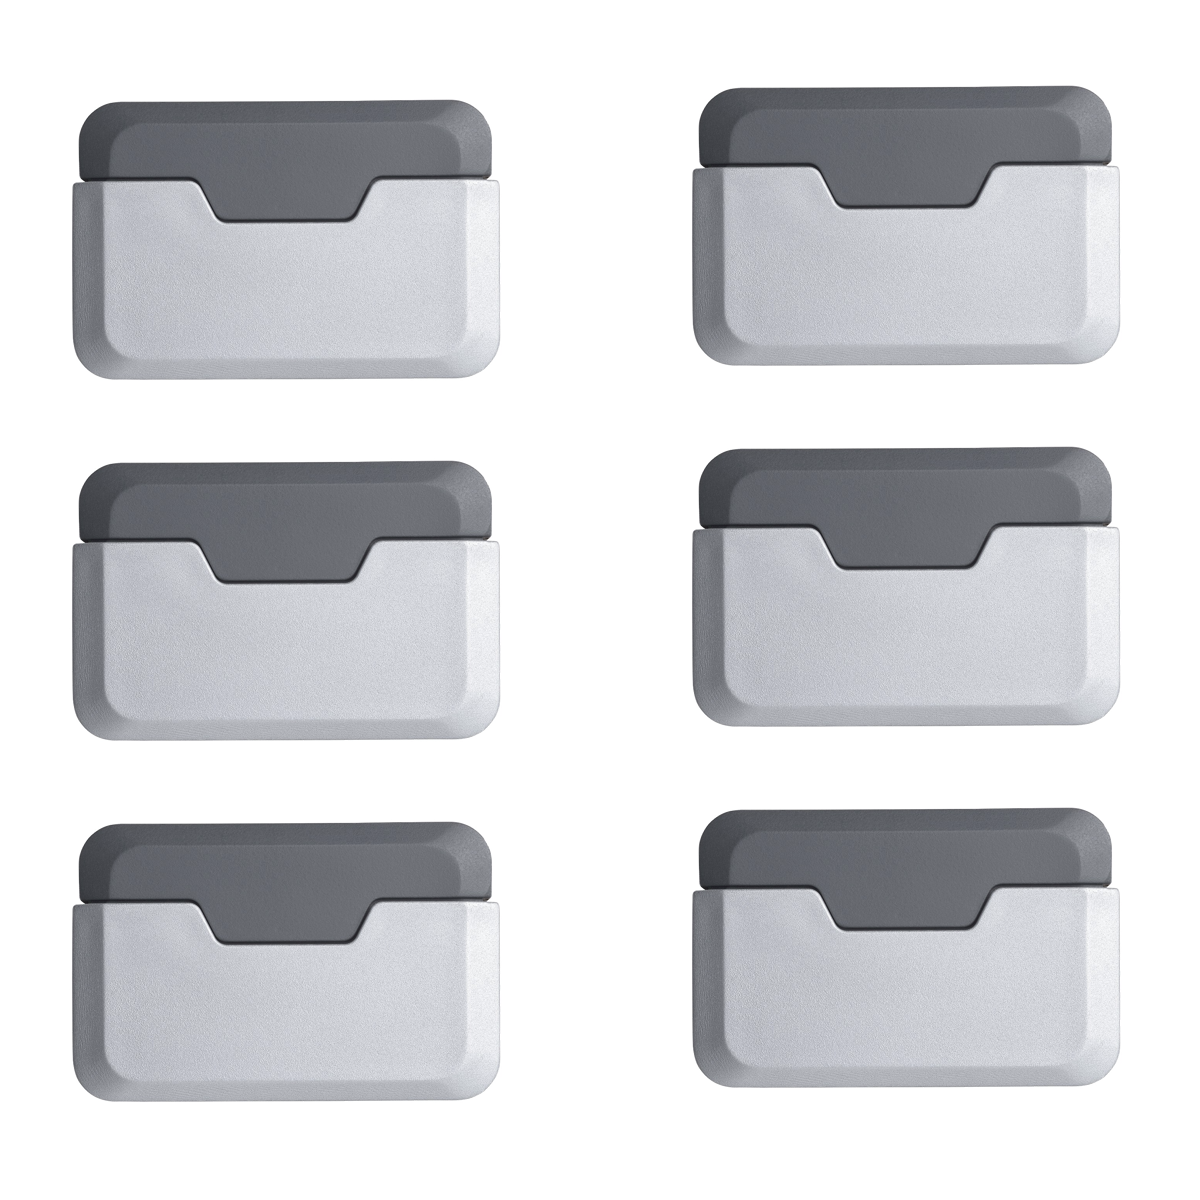 6 topes de puerta rectangulares adhesivos decorativos de aluminio en acabado metalizado